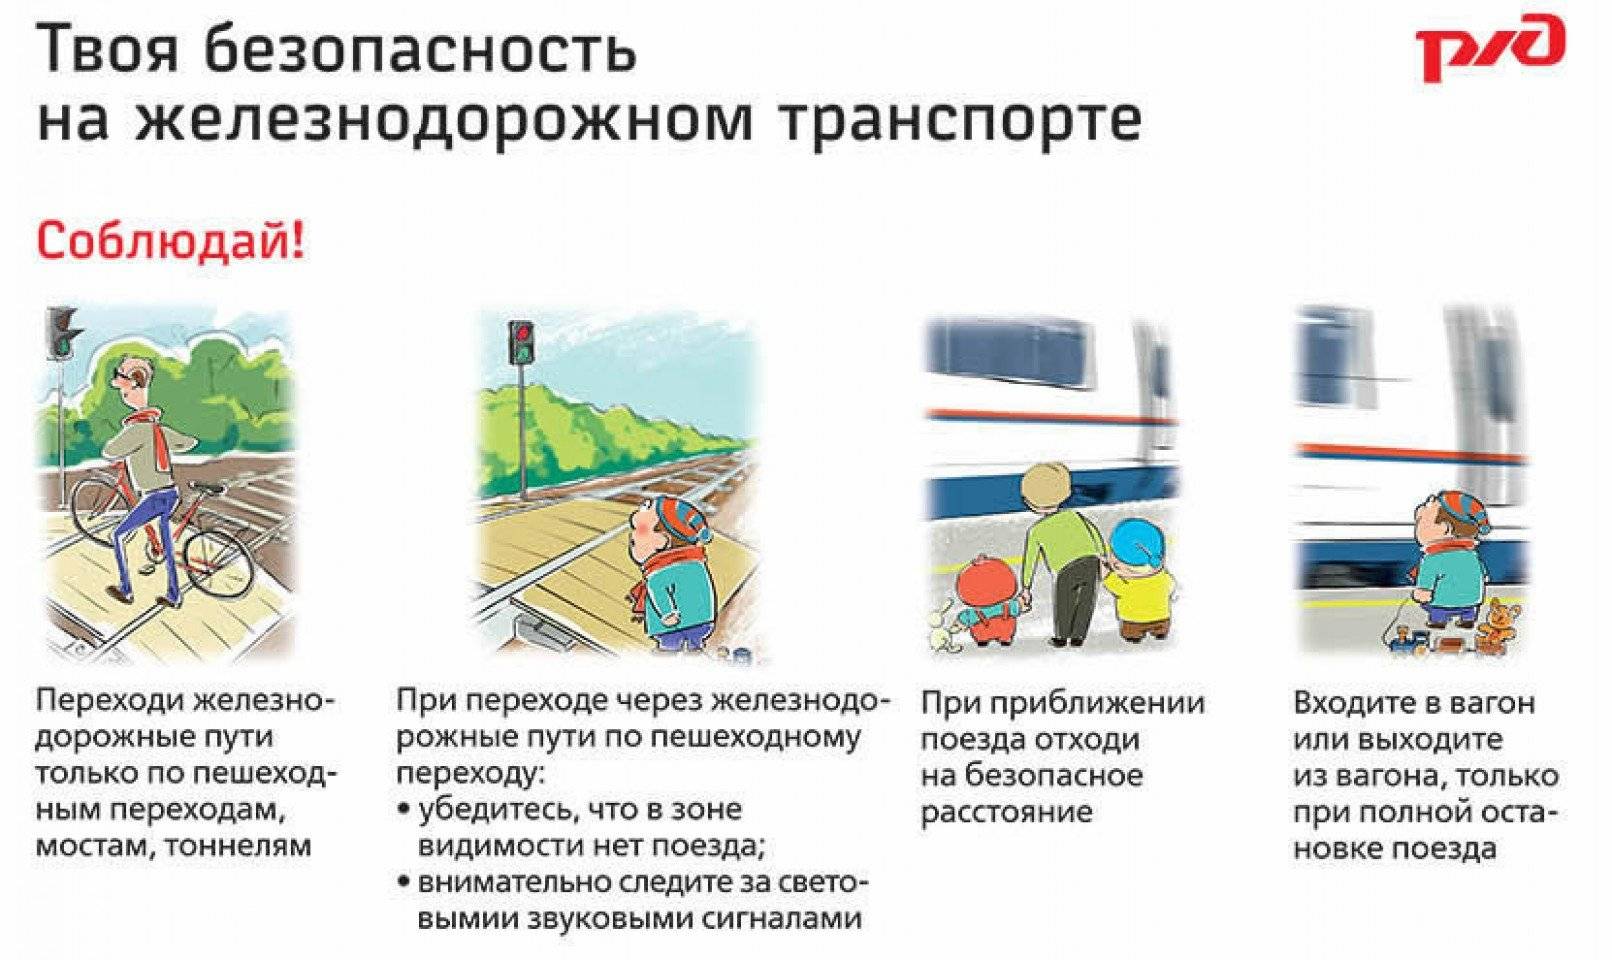 Мбоу "гимназия №1 г. никольское" - правила безопасности на станции и вокзале